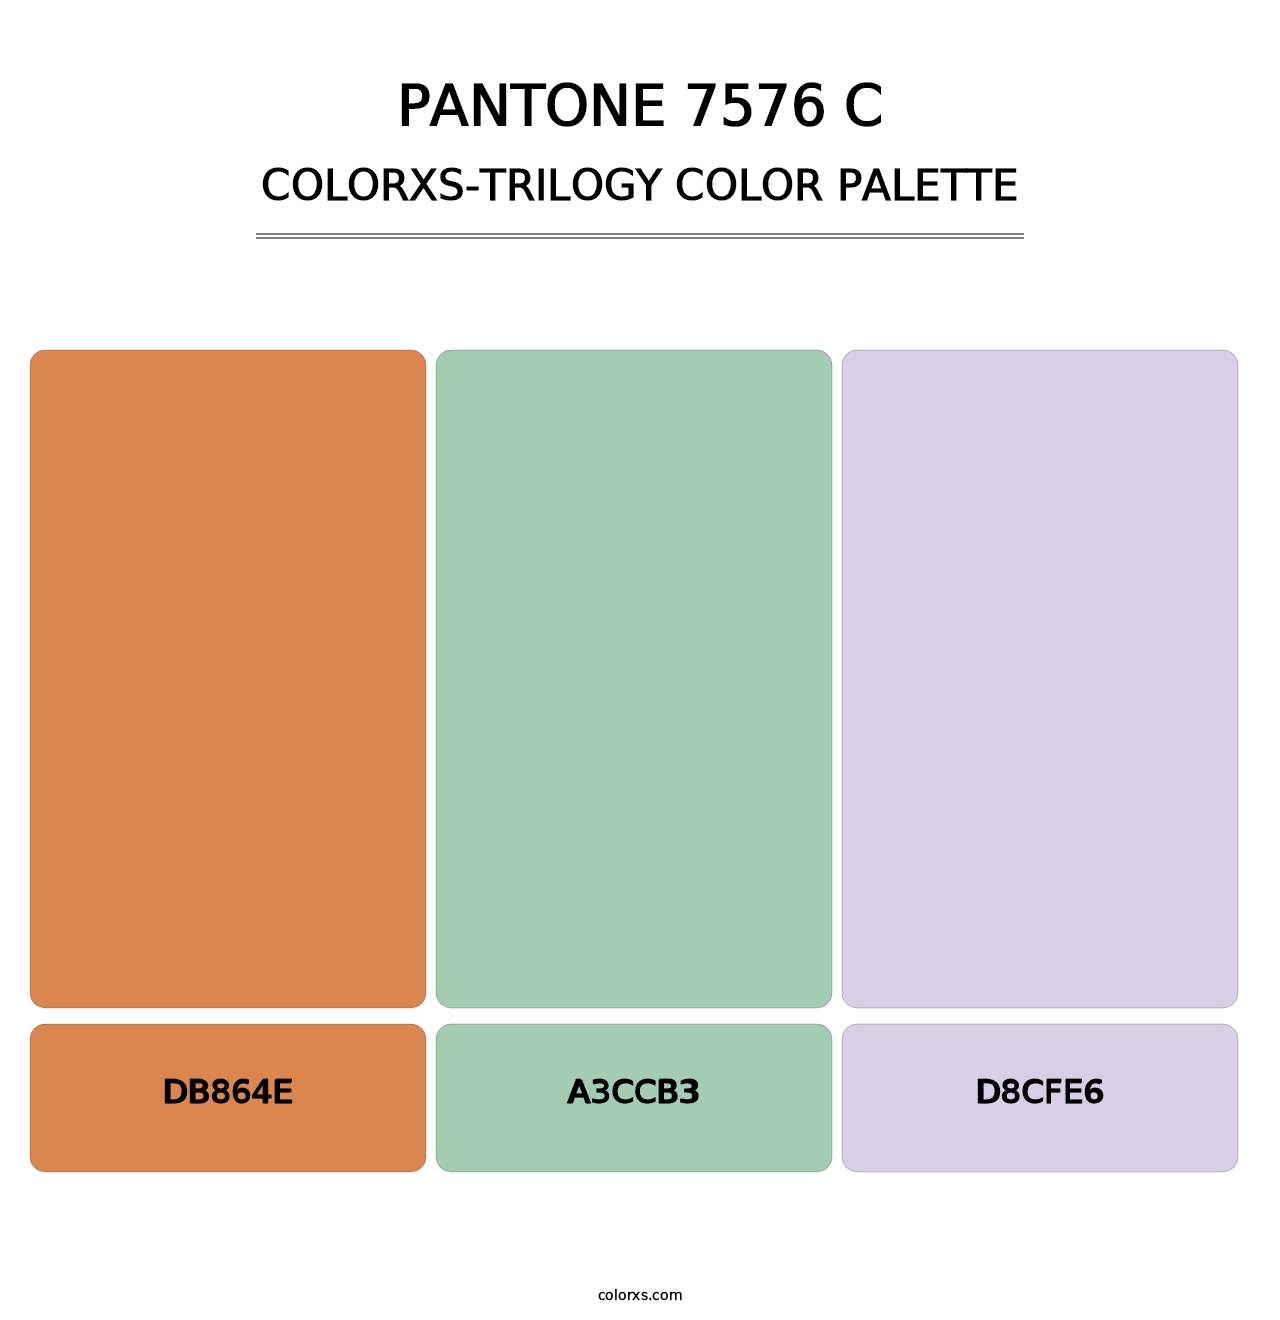 PANTONE 7576 C - Colorxs Trilogy Palette